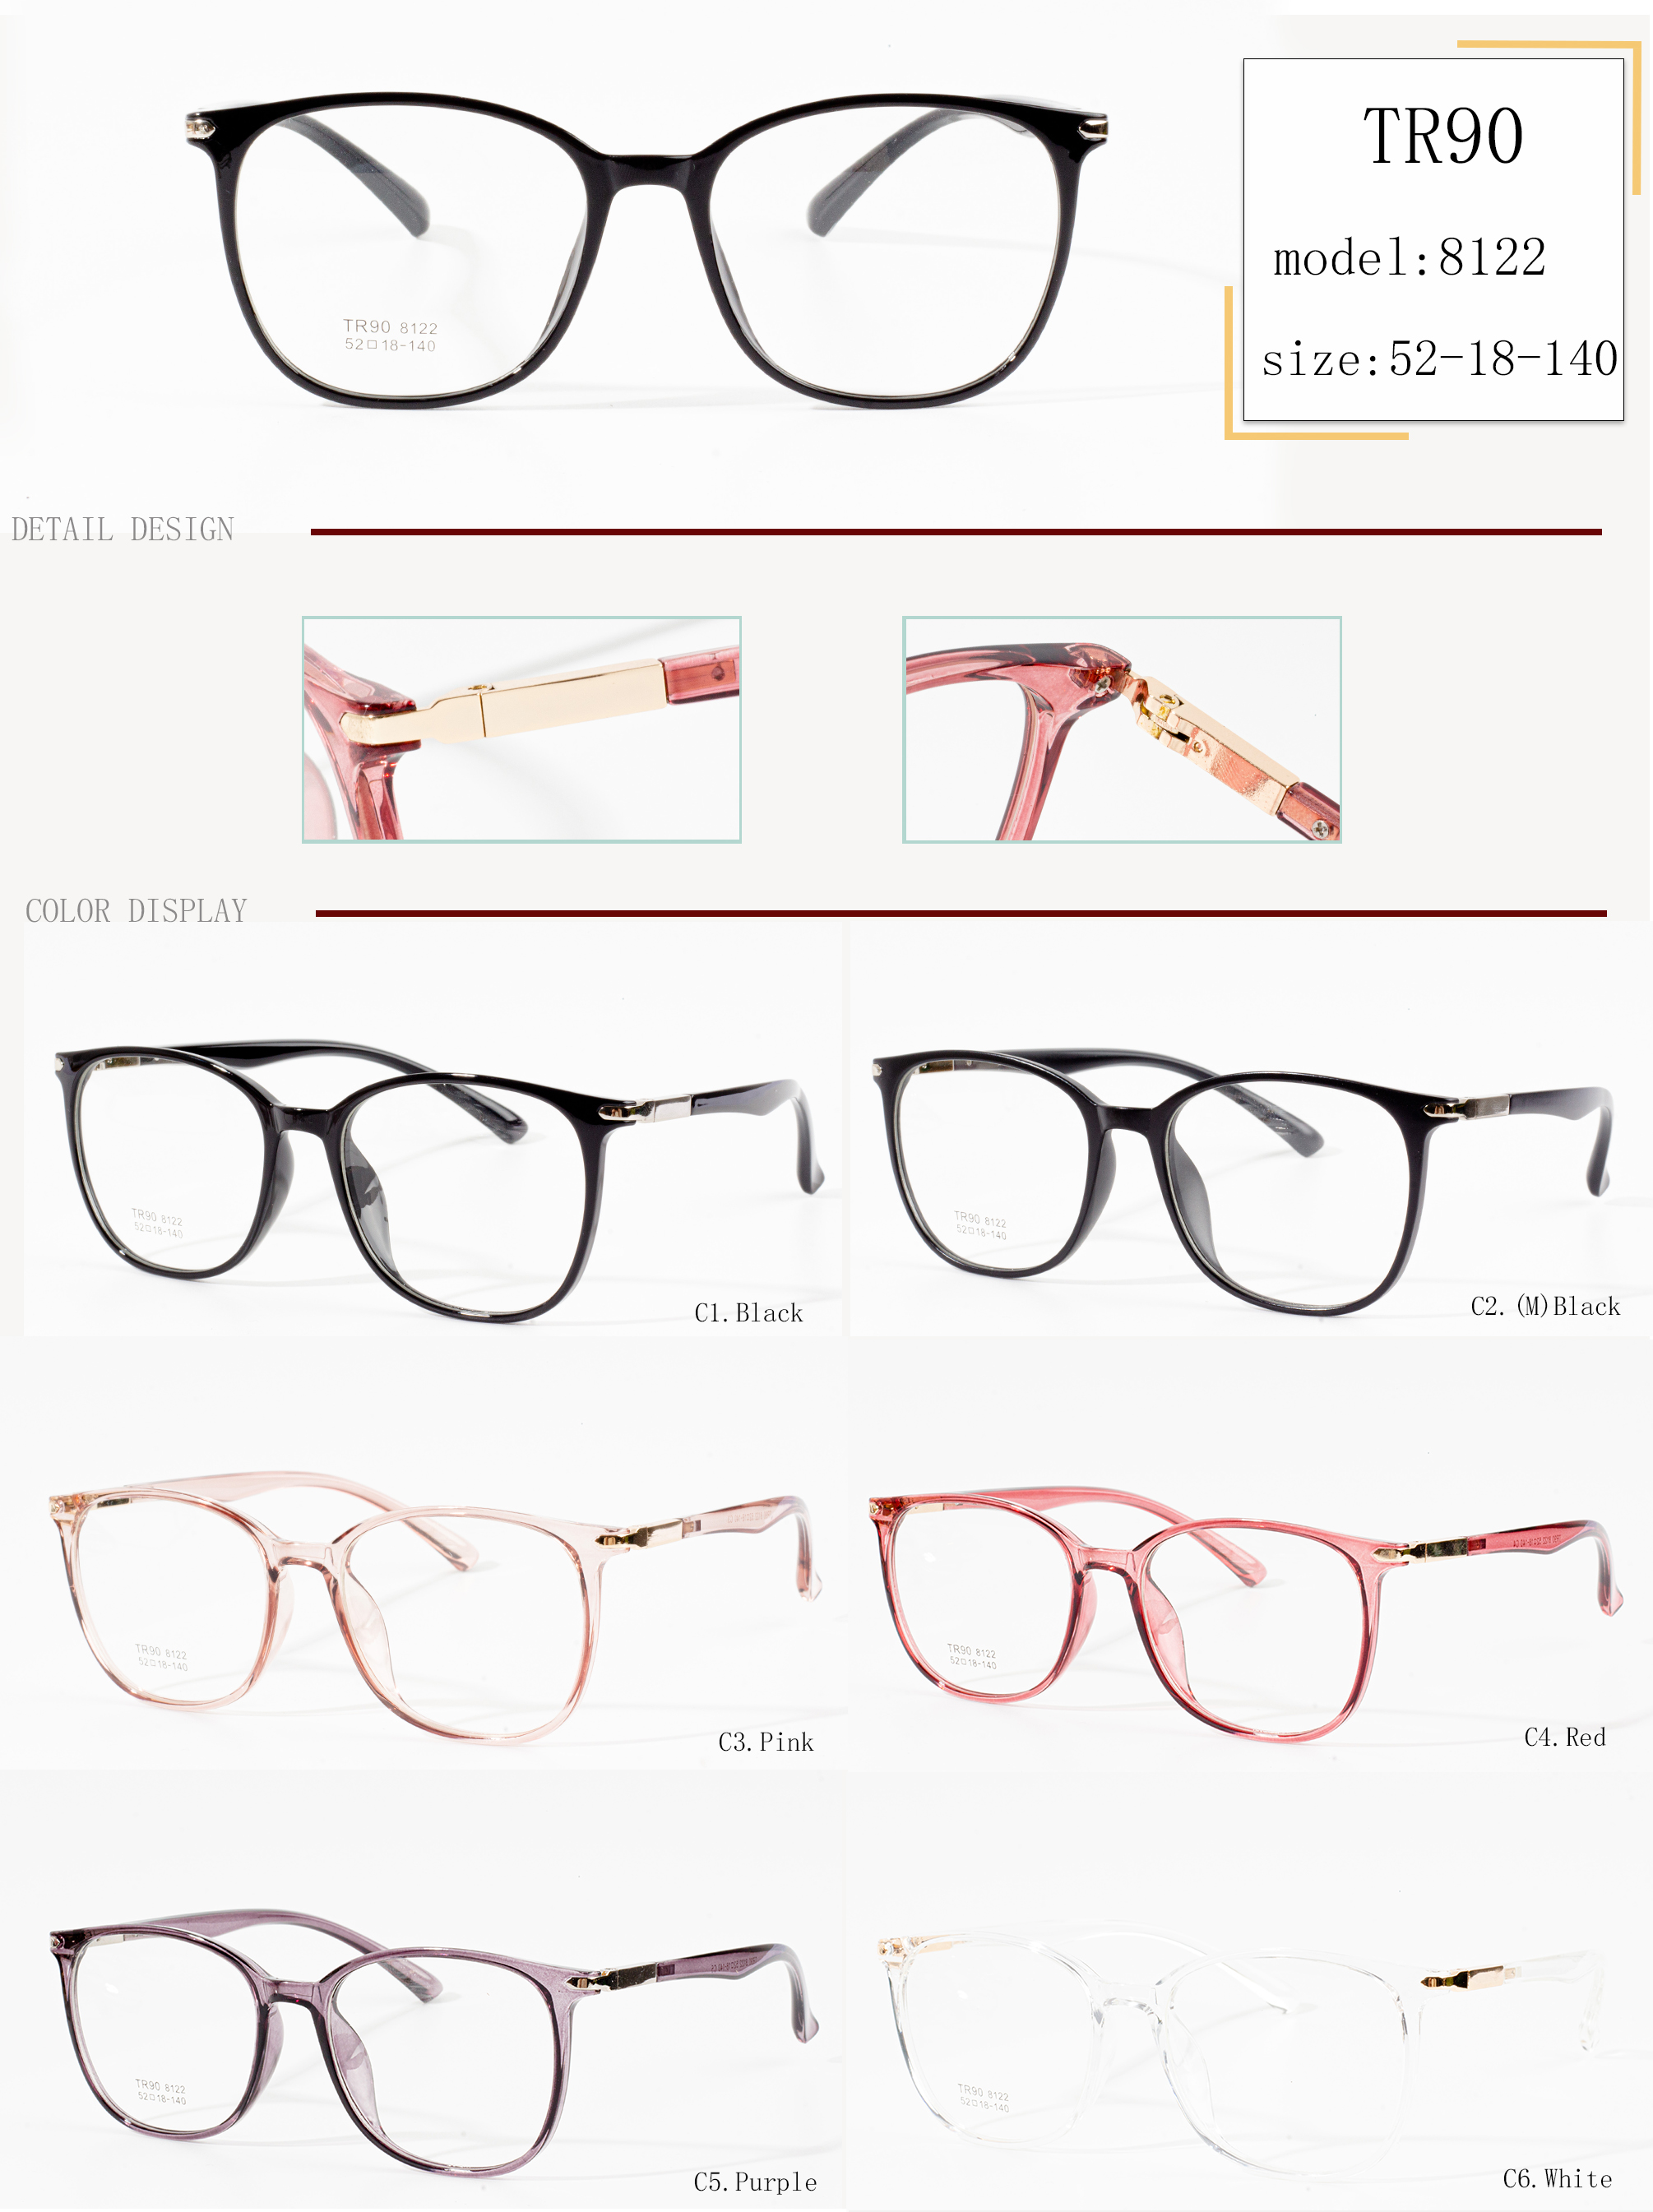 marques de montures de lunettes haut de gamme